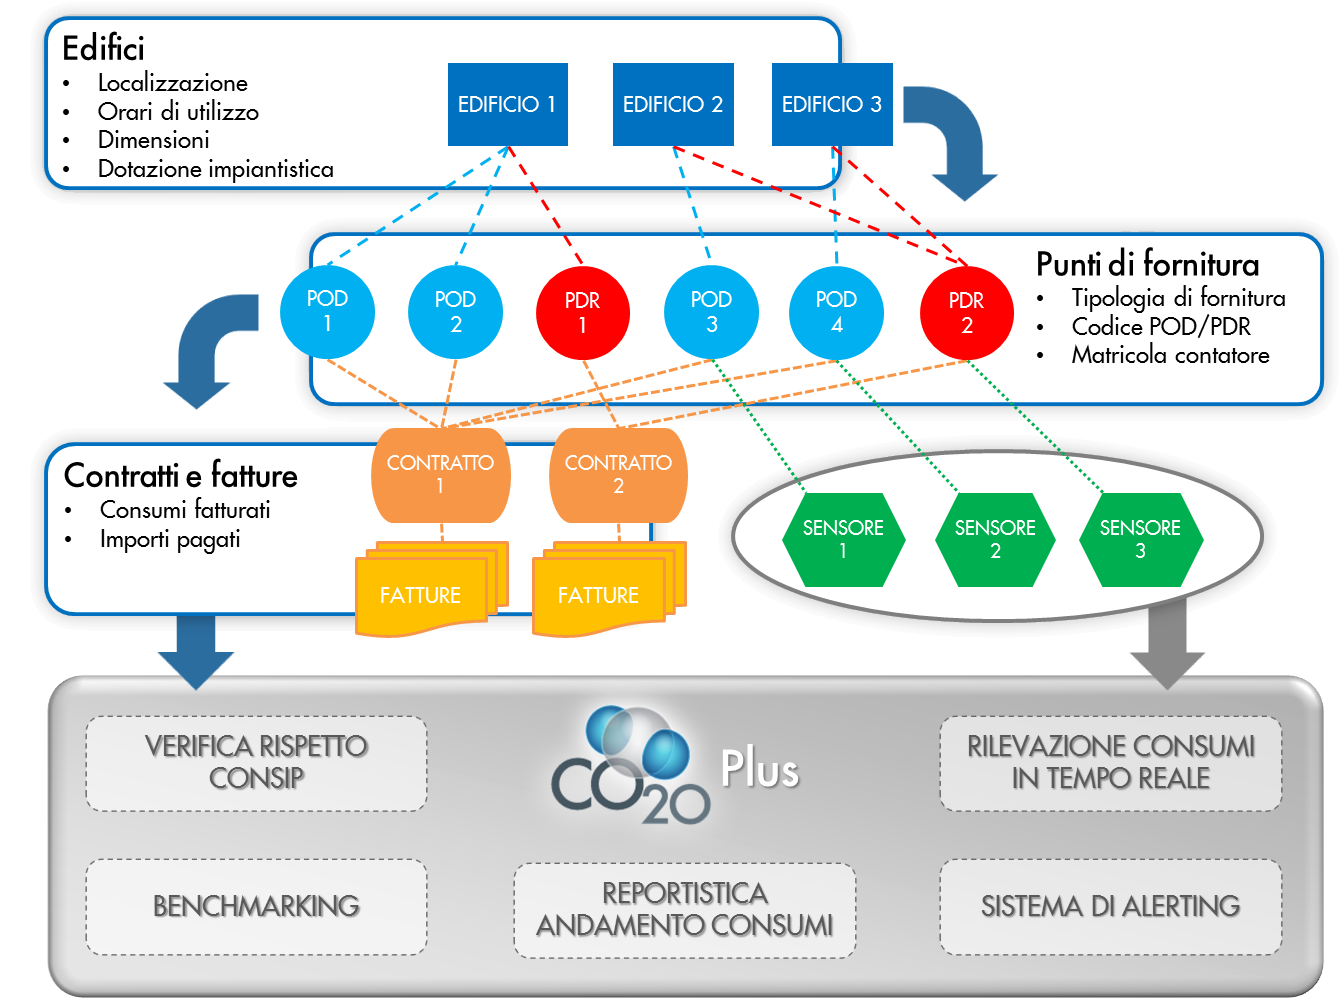 CO20-Plus: struttura del software